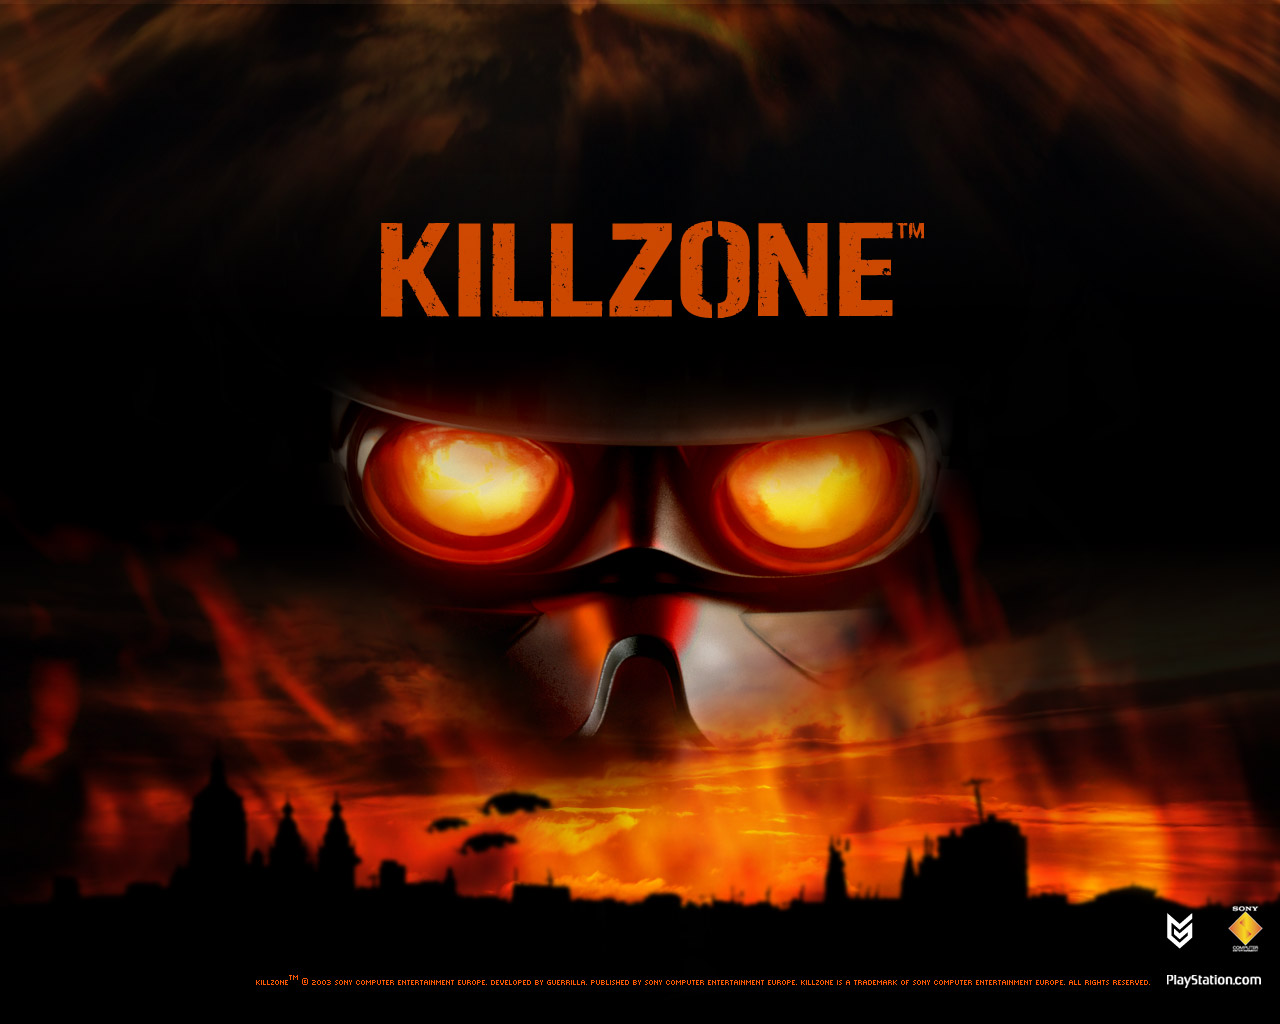 Скачать бесплатно обои killzone wars - 1024 x 768 - download free